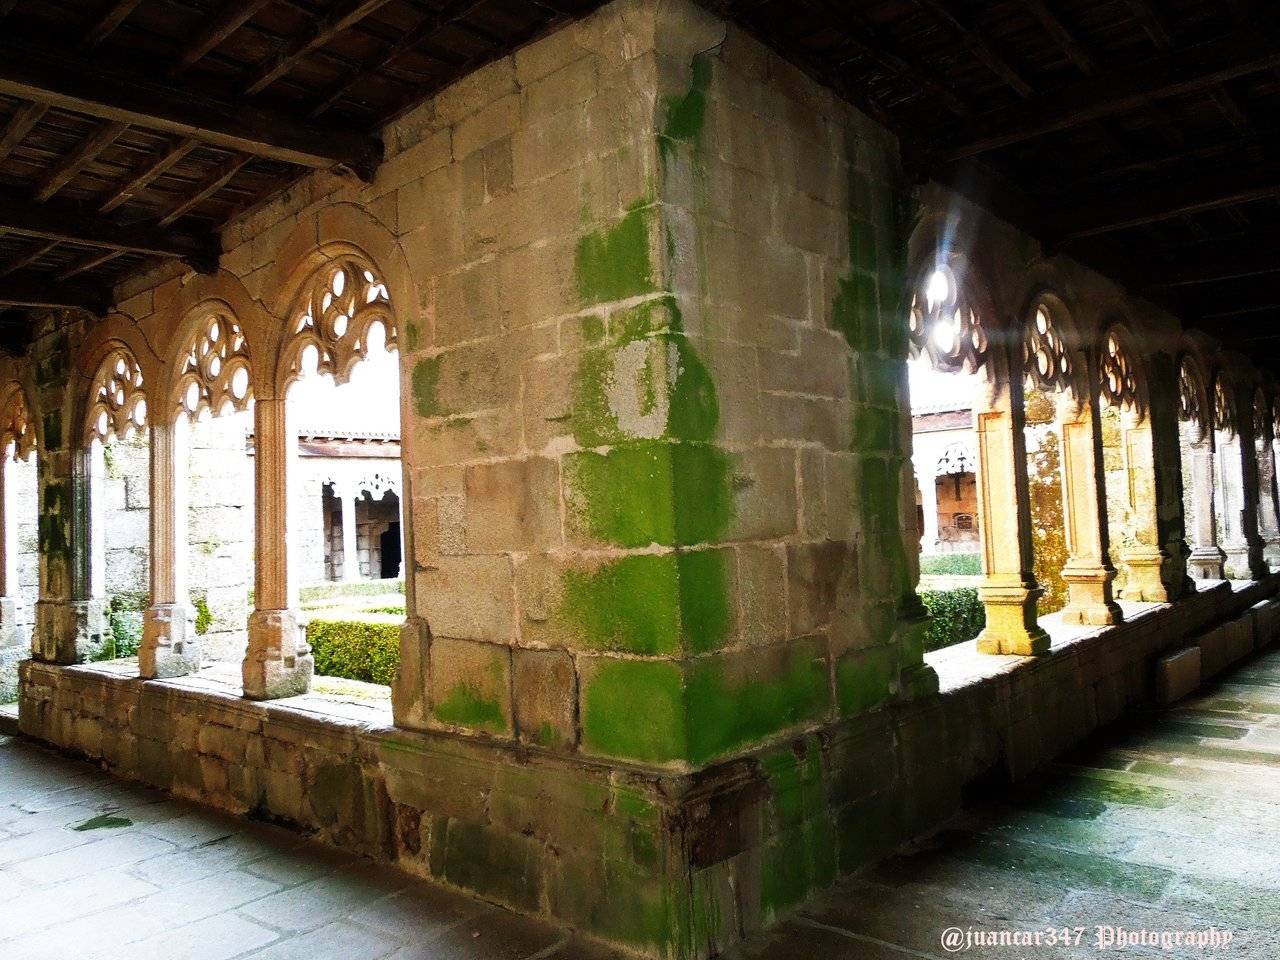 Mysterious places of the Camino de Santiago: Orense, the Collegiate Church of Xunquera de Ambía